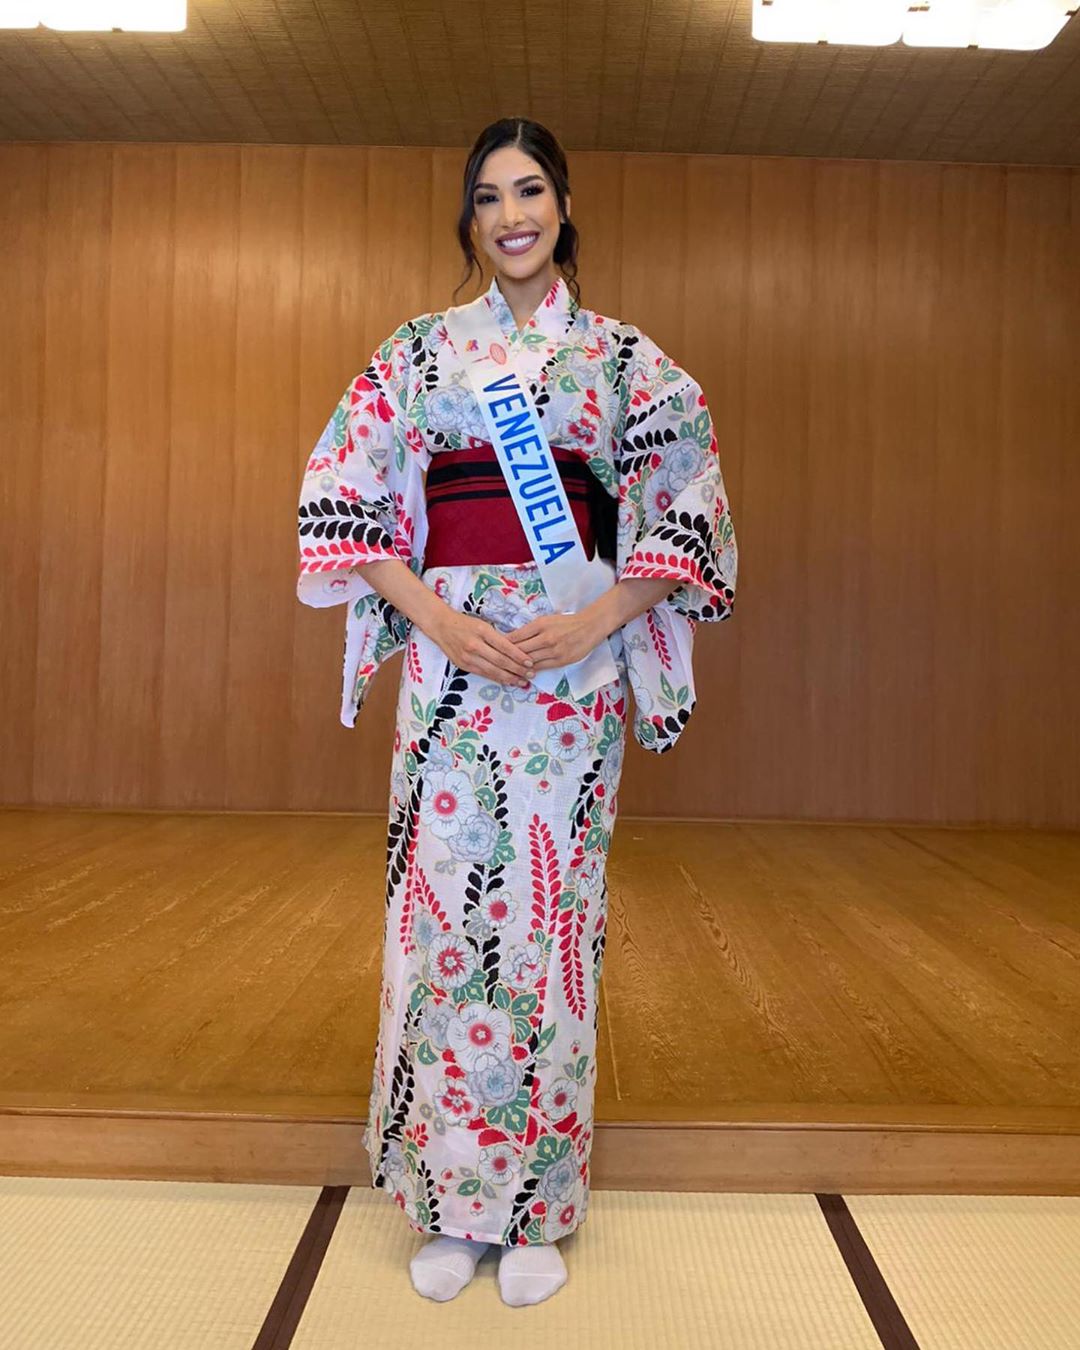 melissa jimenez, top 15 de miss international 2019. - Página 8 71279010